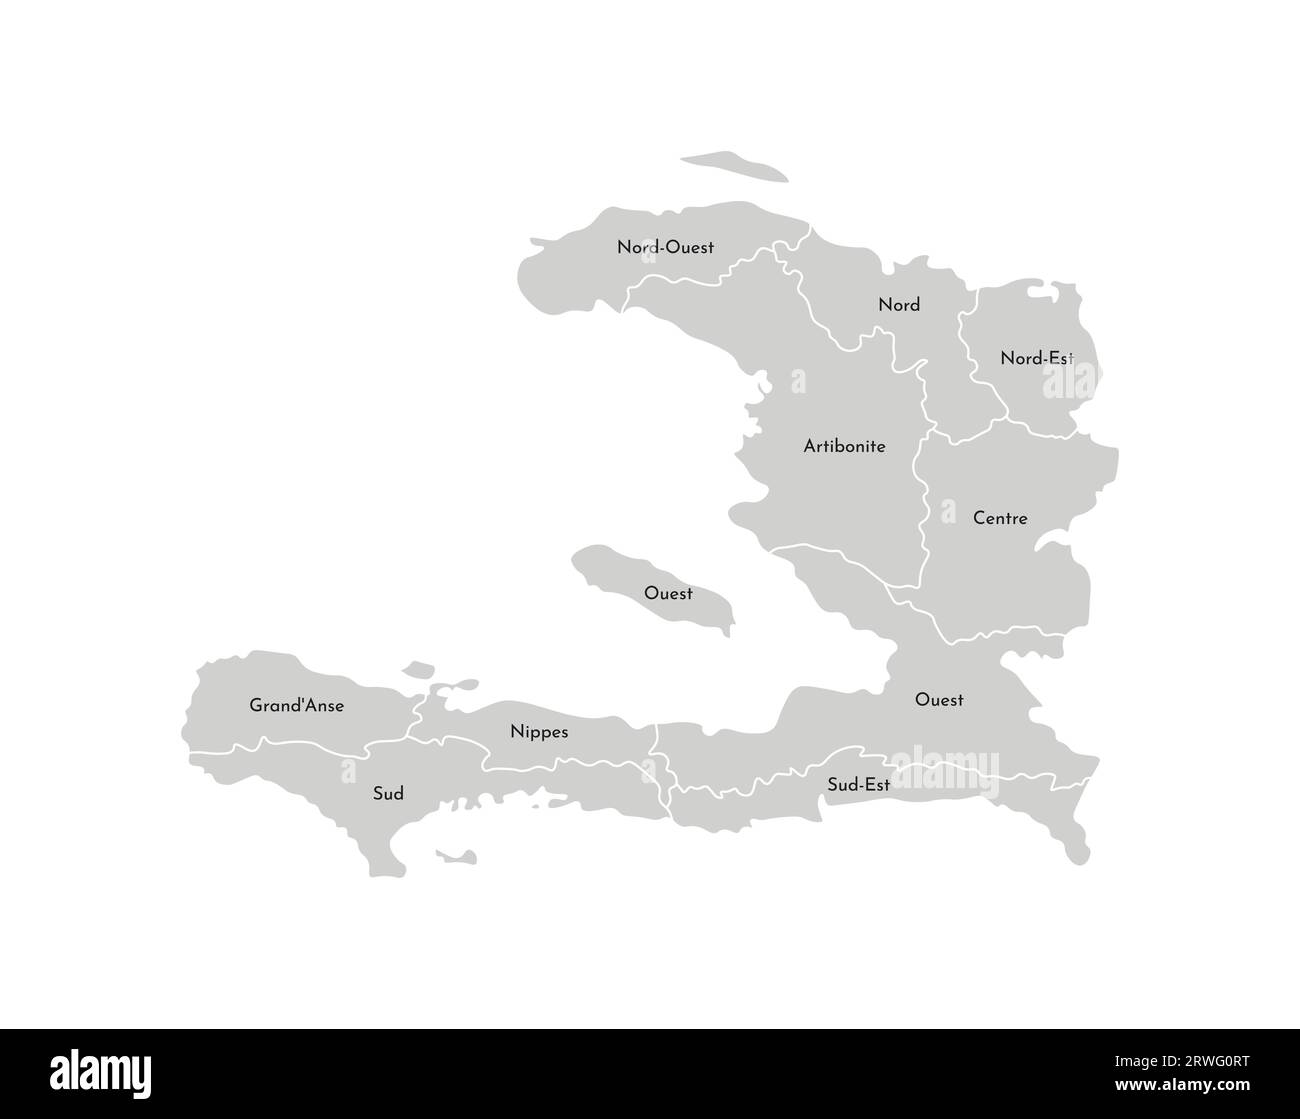 Illustration isolée vectorielle de carte administrative simplifiée d'Haïti. Frontières et noms des départements (régions). Silhouettes grises. Outlin blanc Illustration de Vecteur